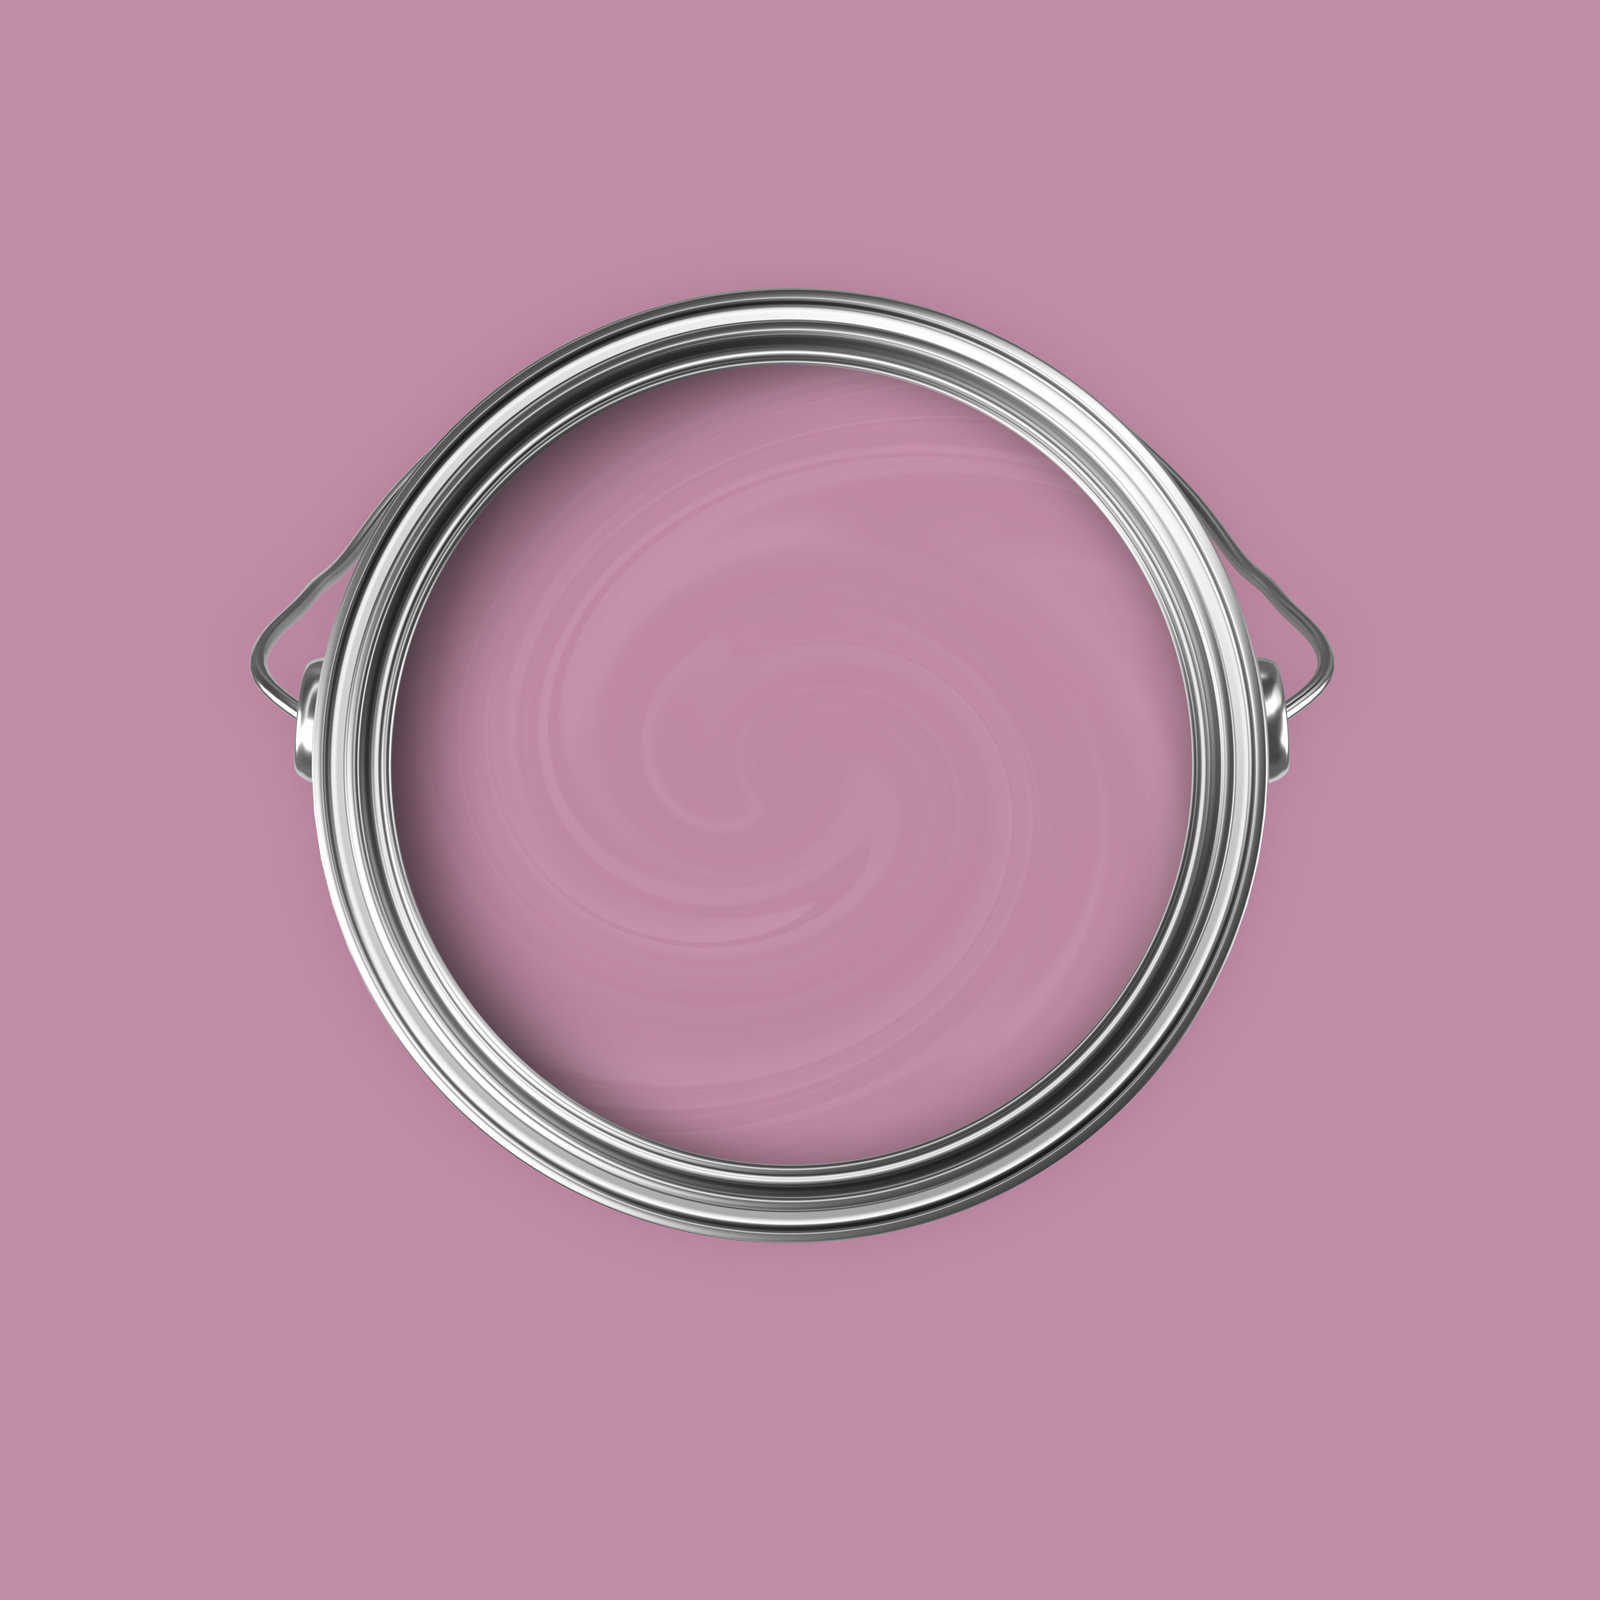             Pintura mural Premium Sensitive Berry »Beautiful Berry« NW210 – 5 litro
        